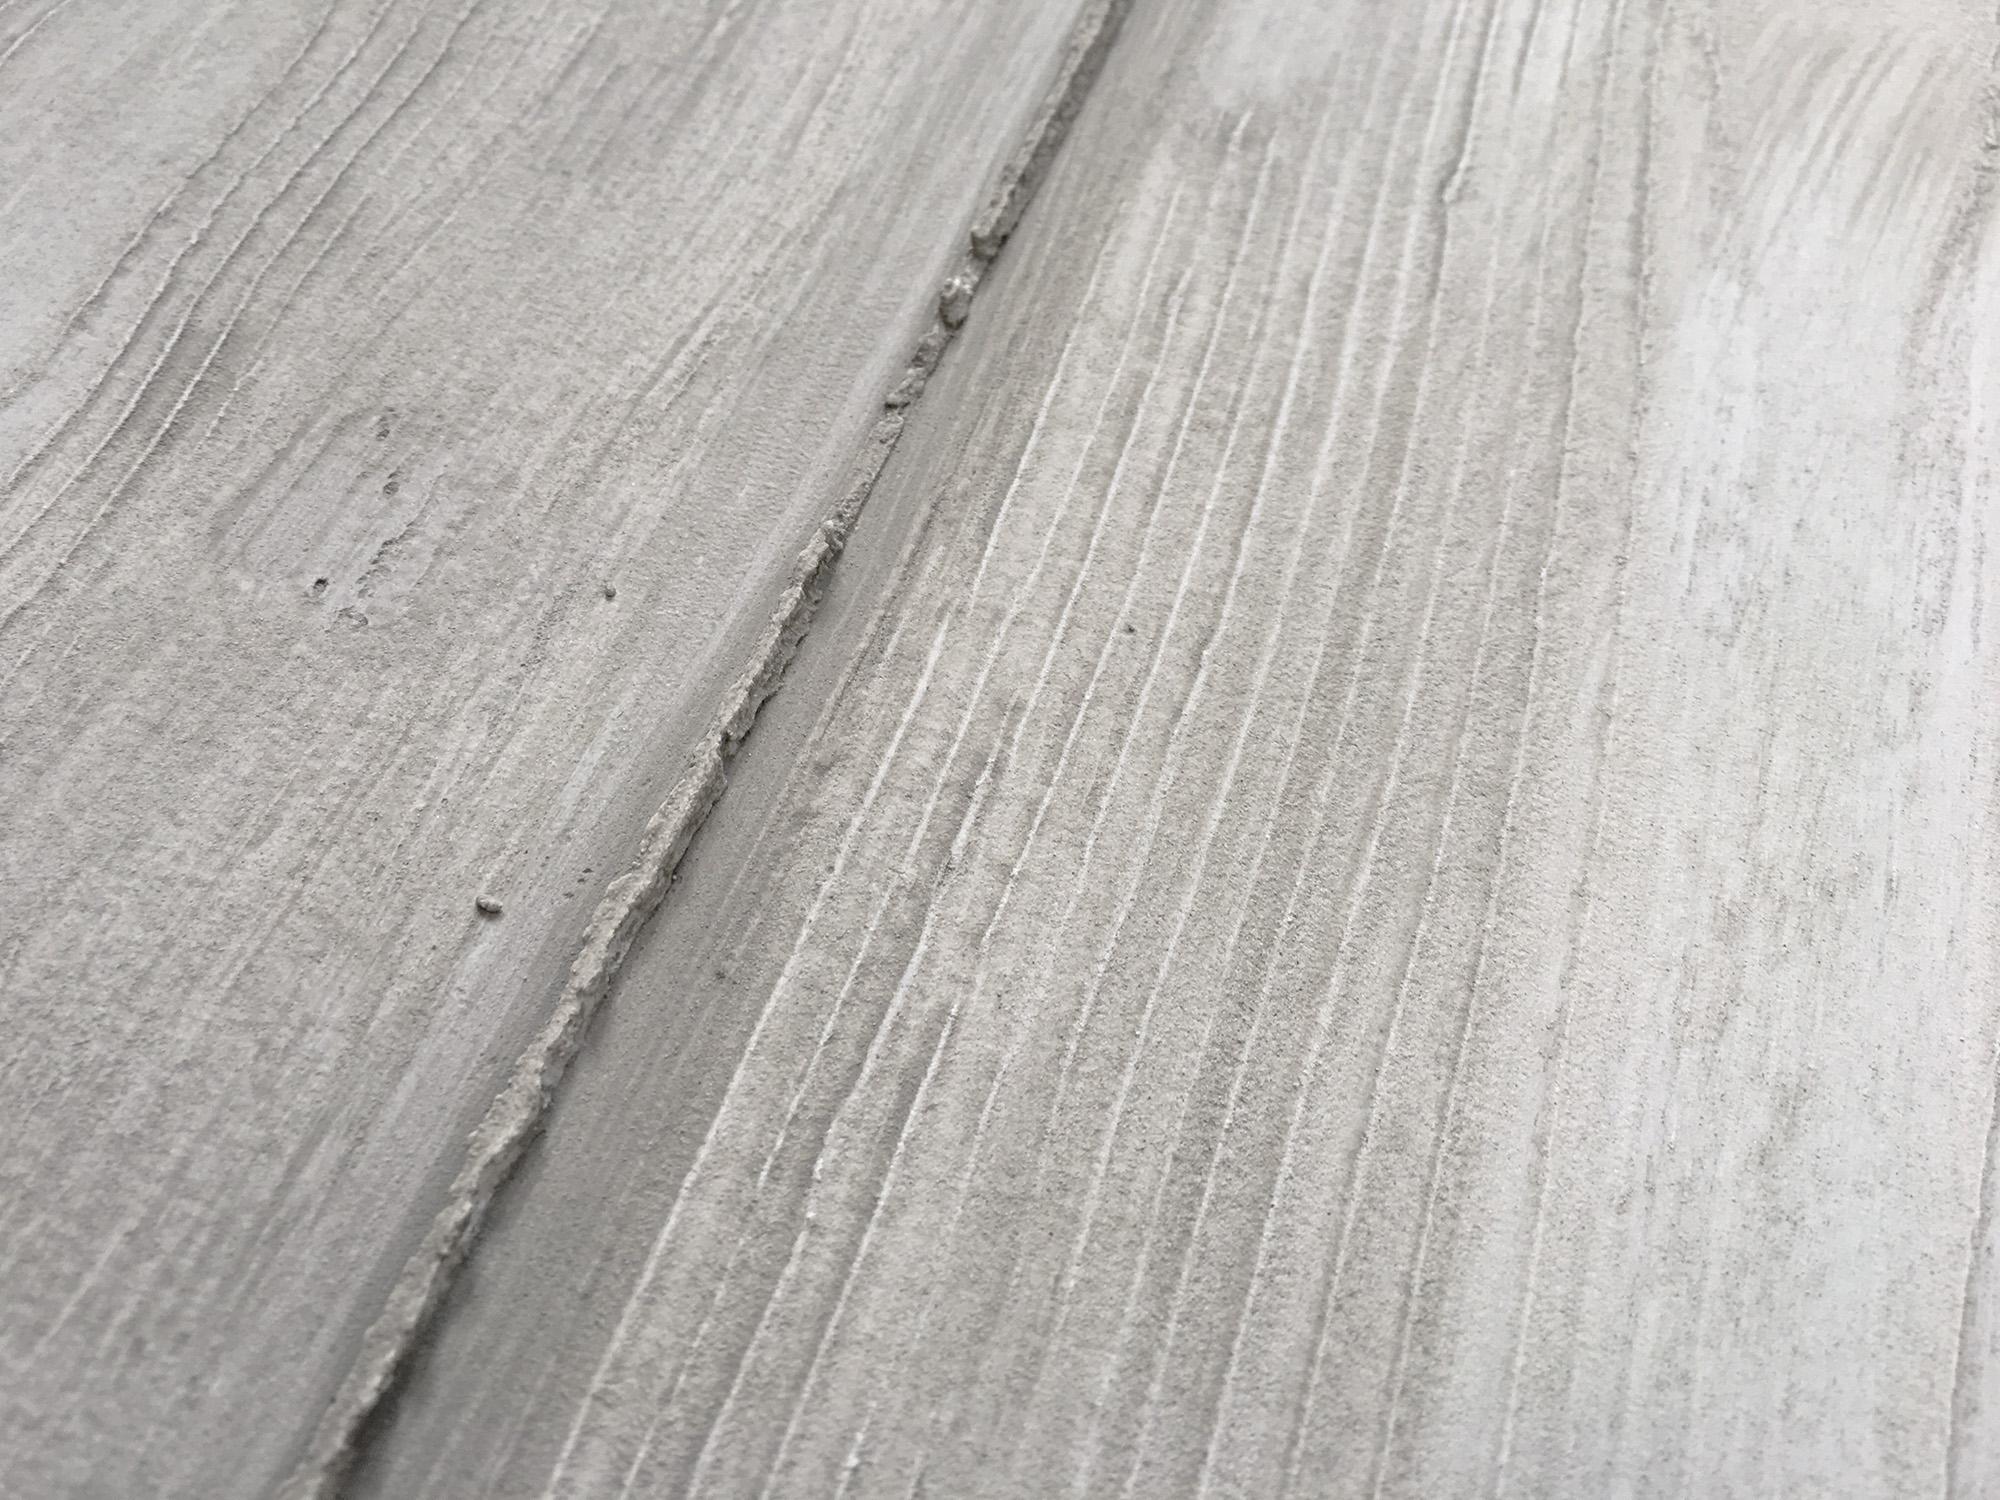 Schalbetonoptik / Wandgestaltung mit Betonoptiken #betonwand #wandgestaltung #sichtbetonwand ©FARBCOMPANY Mike Schleupner